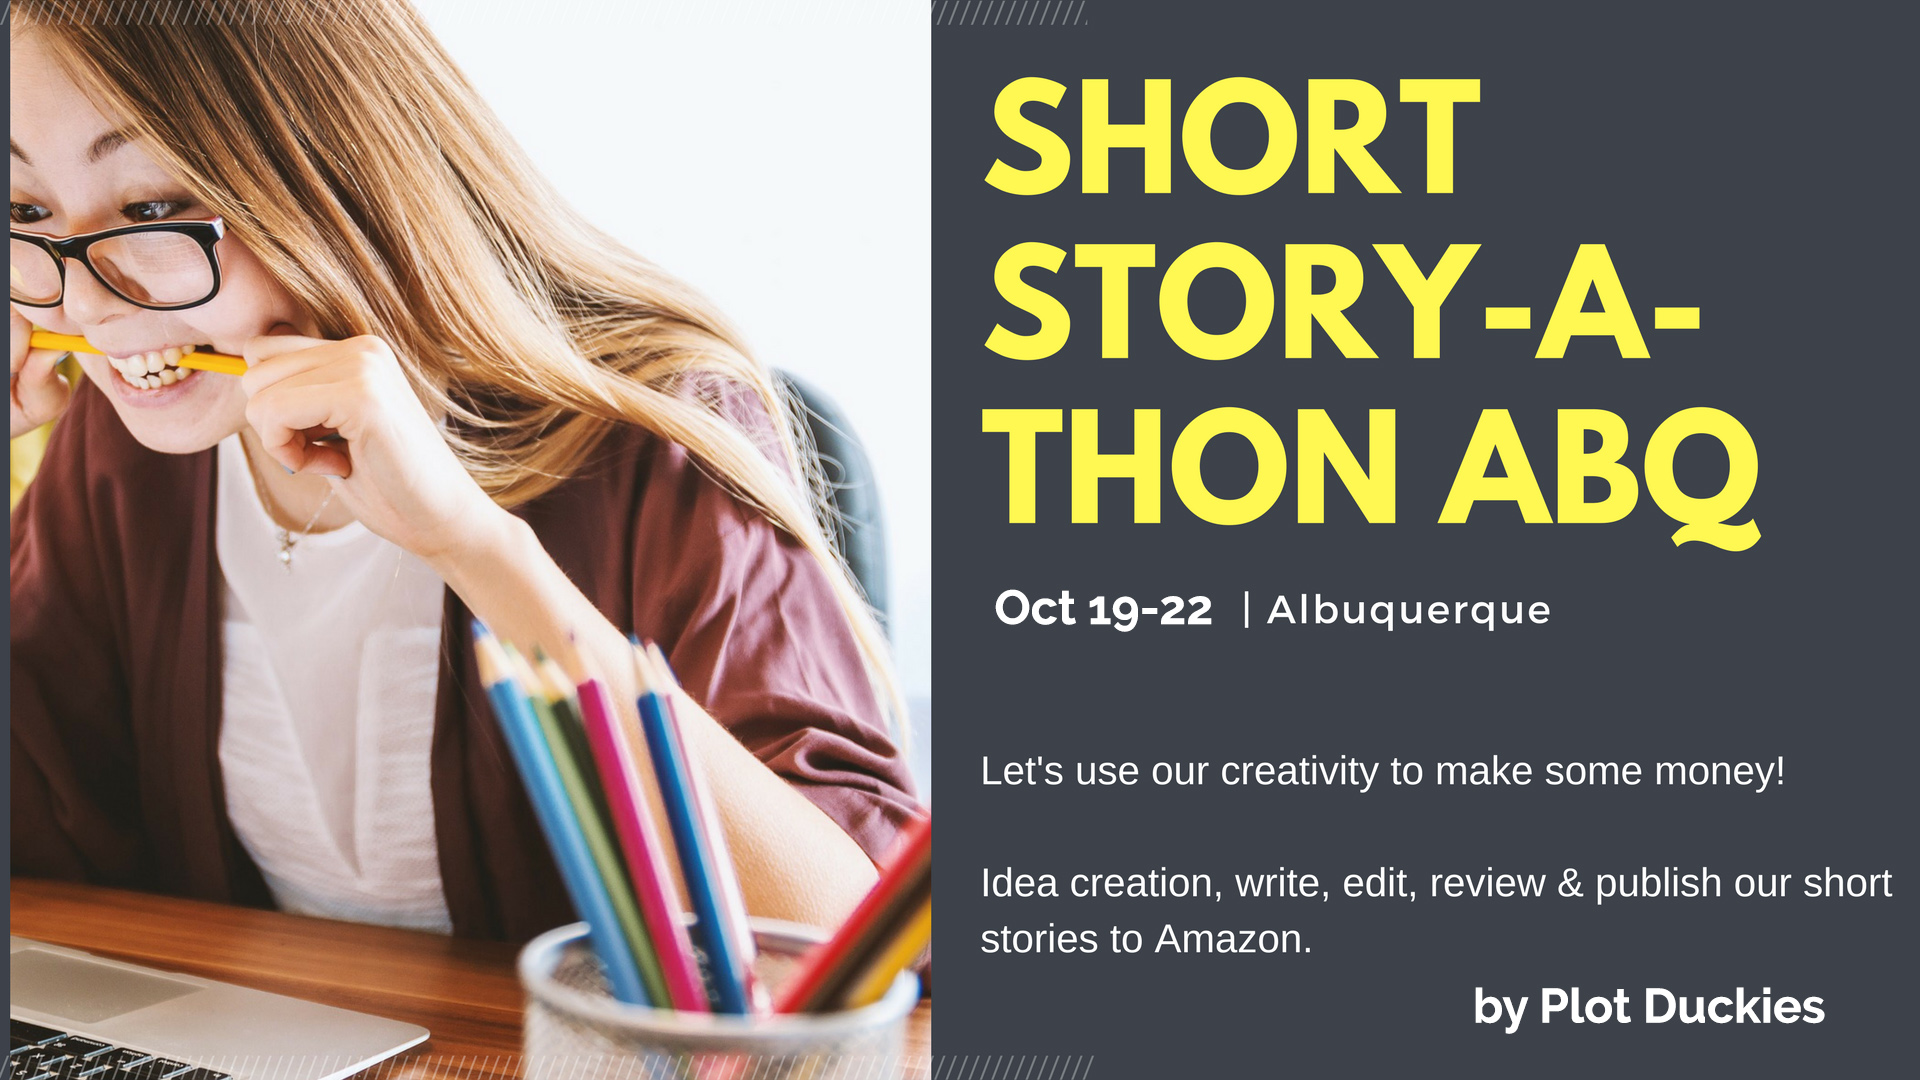 Short Story-A-Thon ABQ